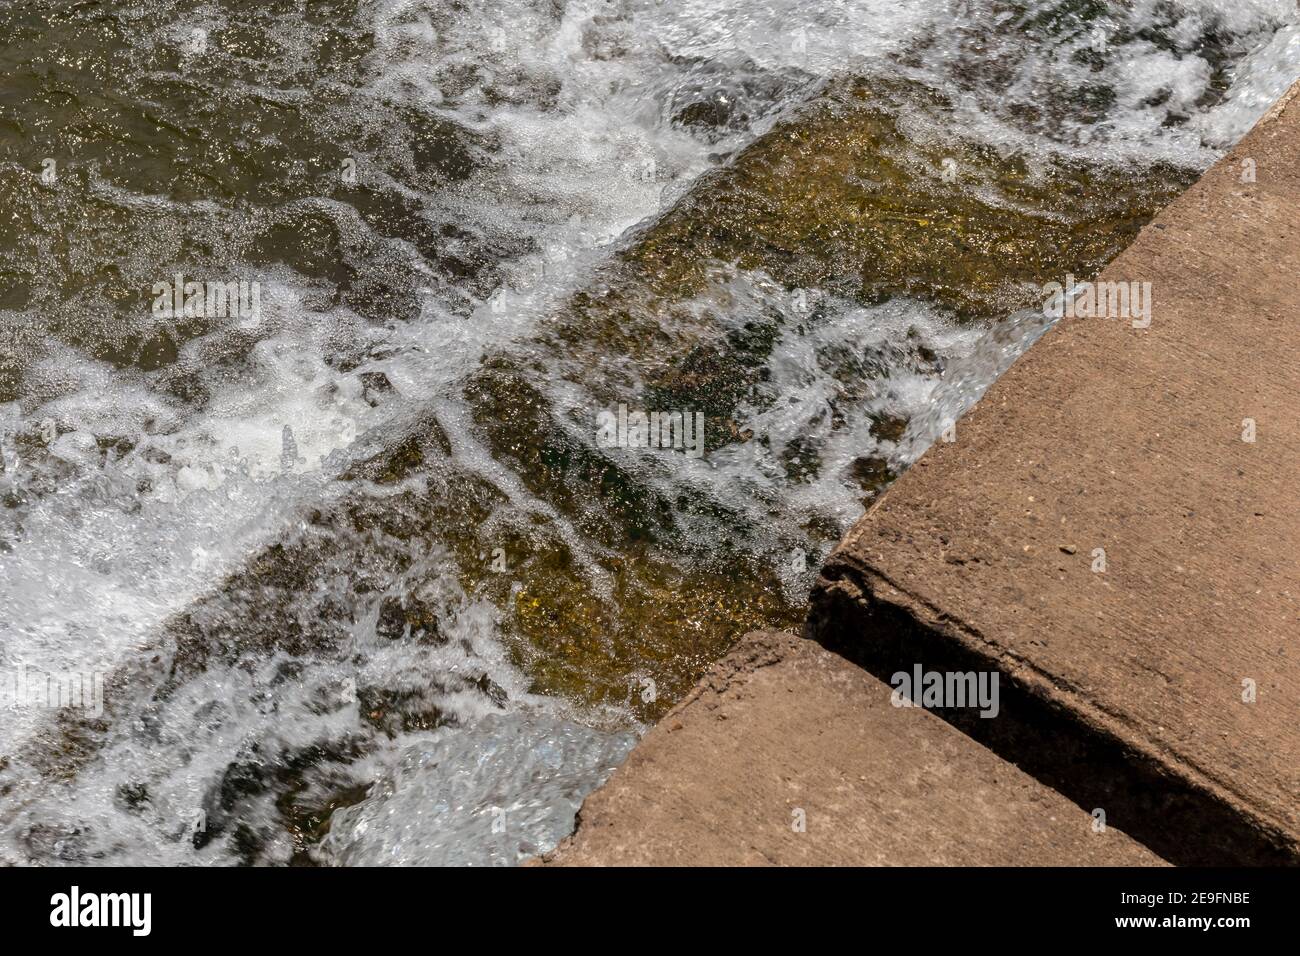 Il flusso d'acqua passa lo stramazzo dal livello superiore al livello inferiore del torrente laterale del fiume. Il weir forma una piccola cascata. Foto Stock